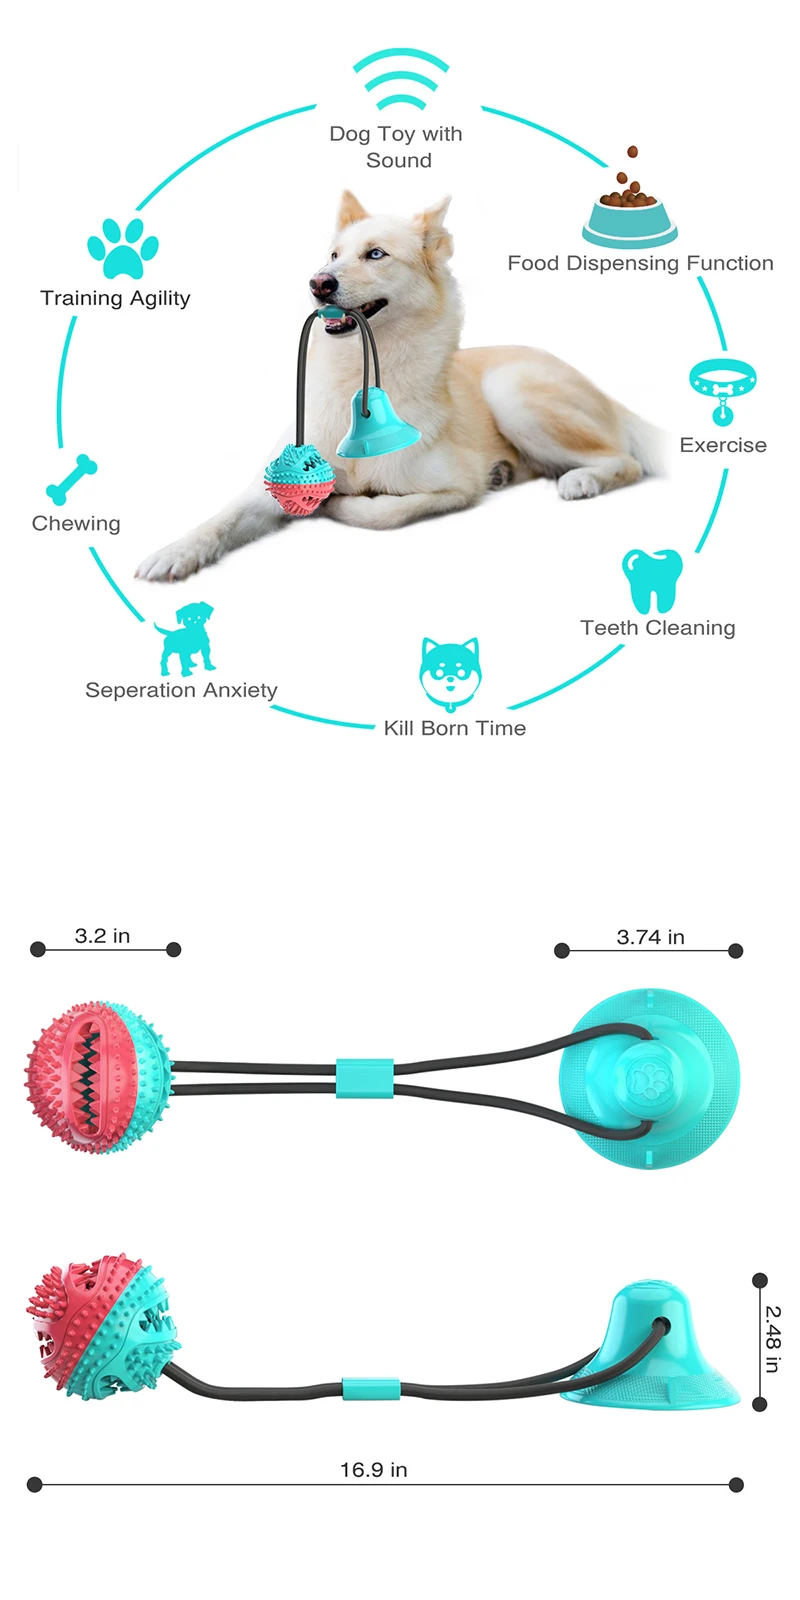 גדול כלב כדור צעצועי יניקה כוס חבלי אינטראקטיבי דולף מזין איטי ללעוס צעצוע Toothing נקי זהב רטריבר גדול ציוד לחיות מחמד